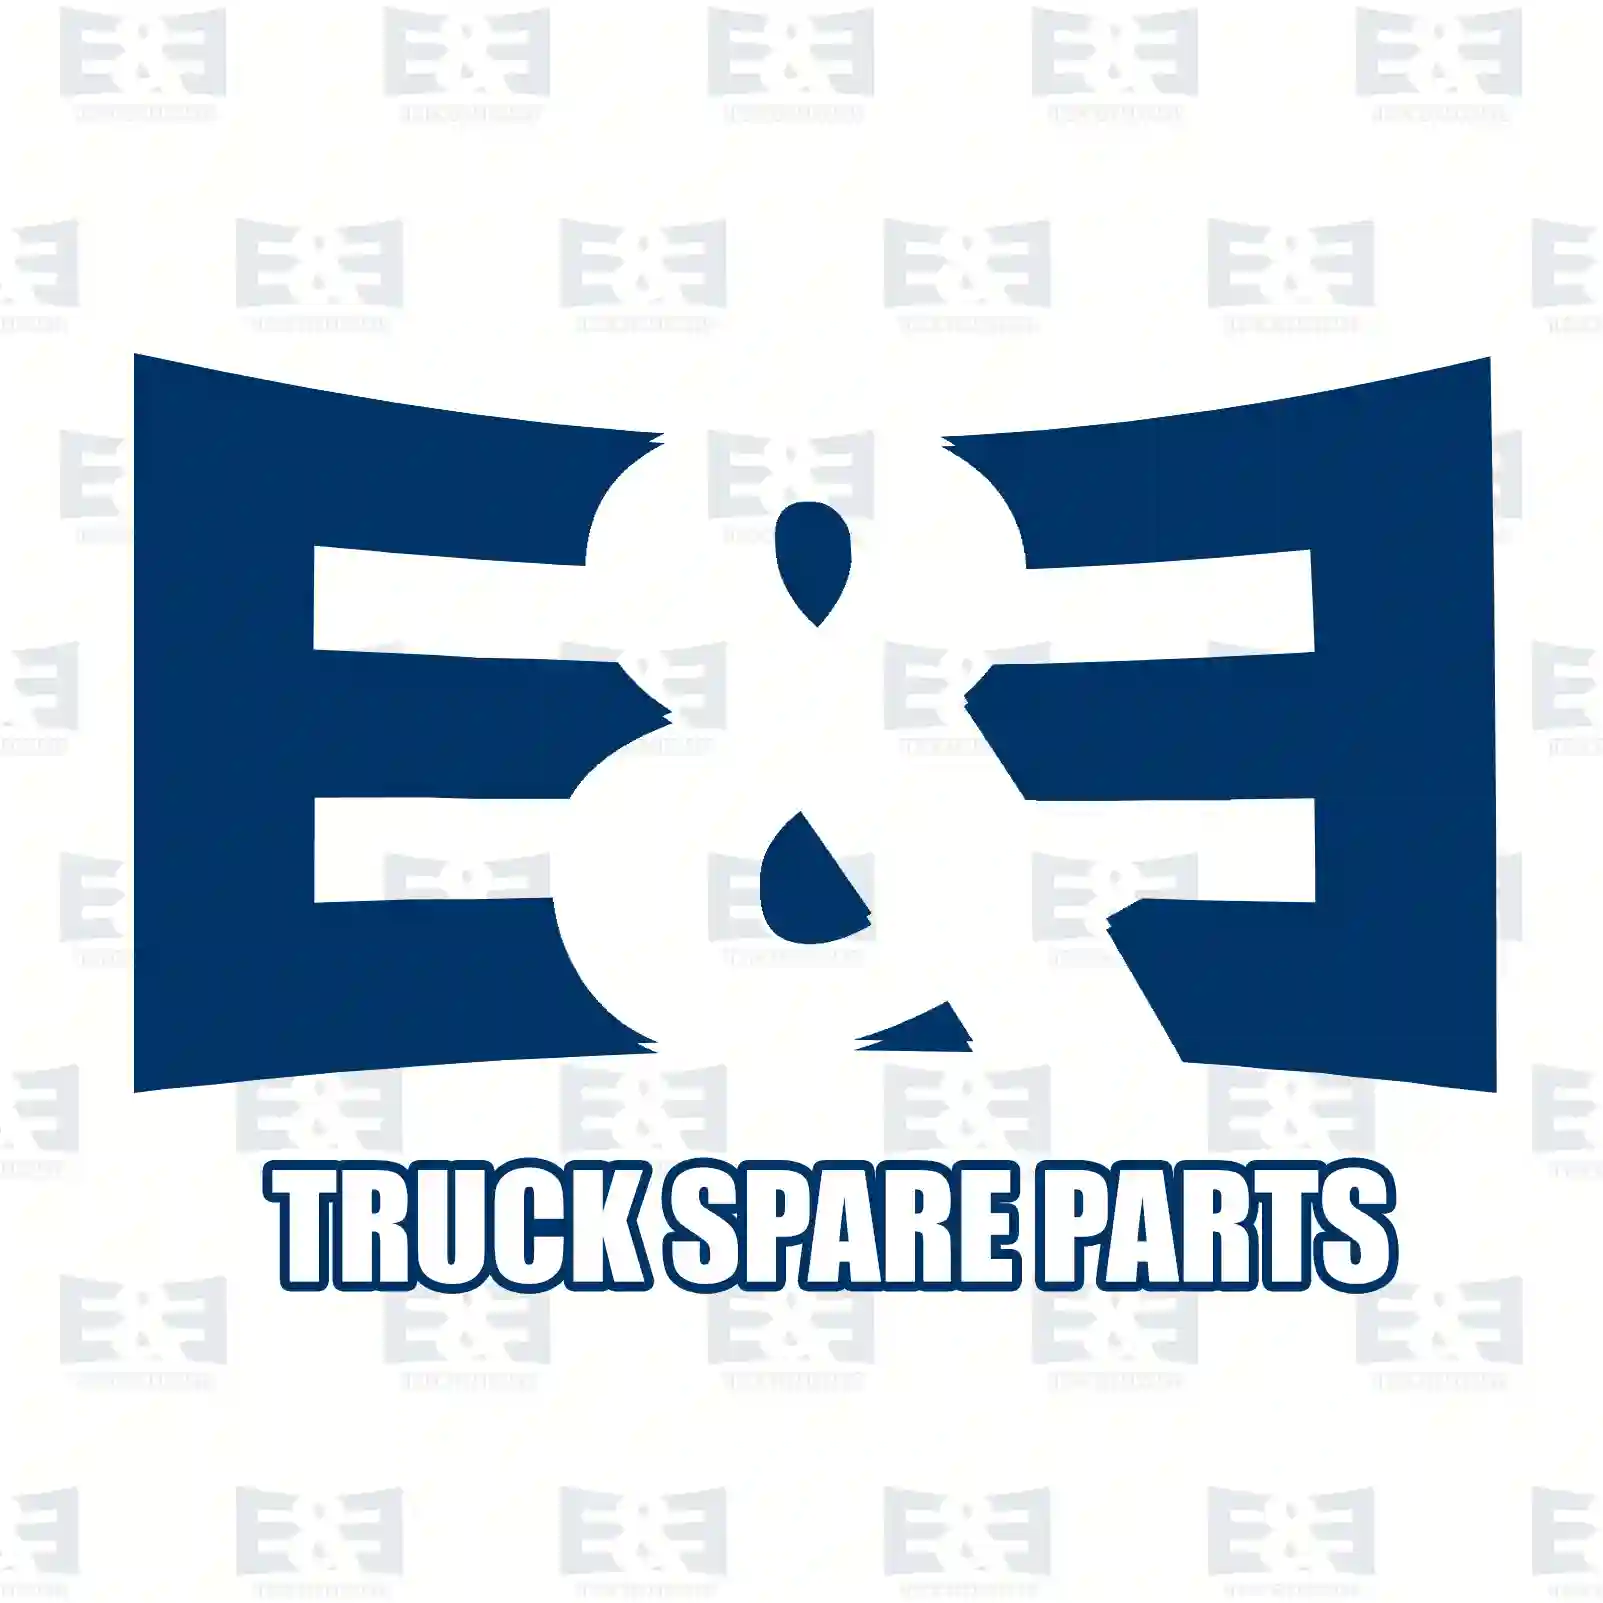 V-belt kit, 2E2203896, 06580412232, 06580422232, 06580432232, 06580472232, 06580490007, 06580722322, 06580732322, 9958478, ZG02375-0008 ||  2E2203896 E&E Truck Spare Parts | Truck Spare Parts, Auotomotive Spare Parts V-belt kit, 2E2203896, 06580412232, 06580422232, 06580432232, 06580472232, 06580490007, 06580722322, 06580732322, 9958478, ZG02375-0008 ||  2E2203896 E&E Truck Spare Parts | Truck Spare Parts, Auotomotive Spare Parts